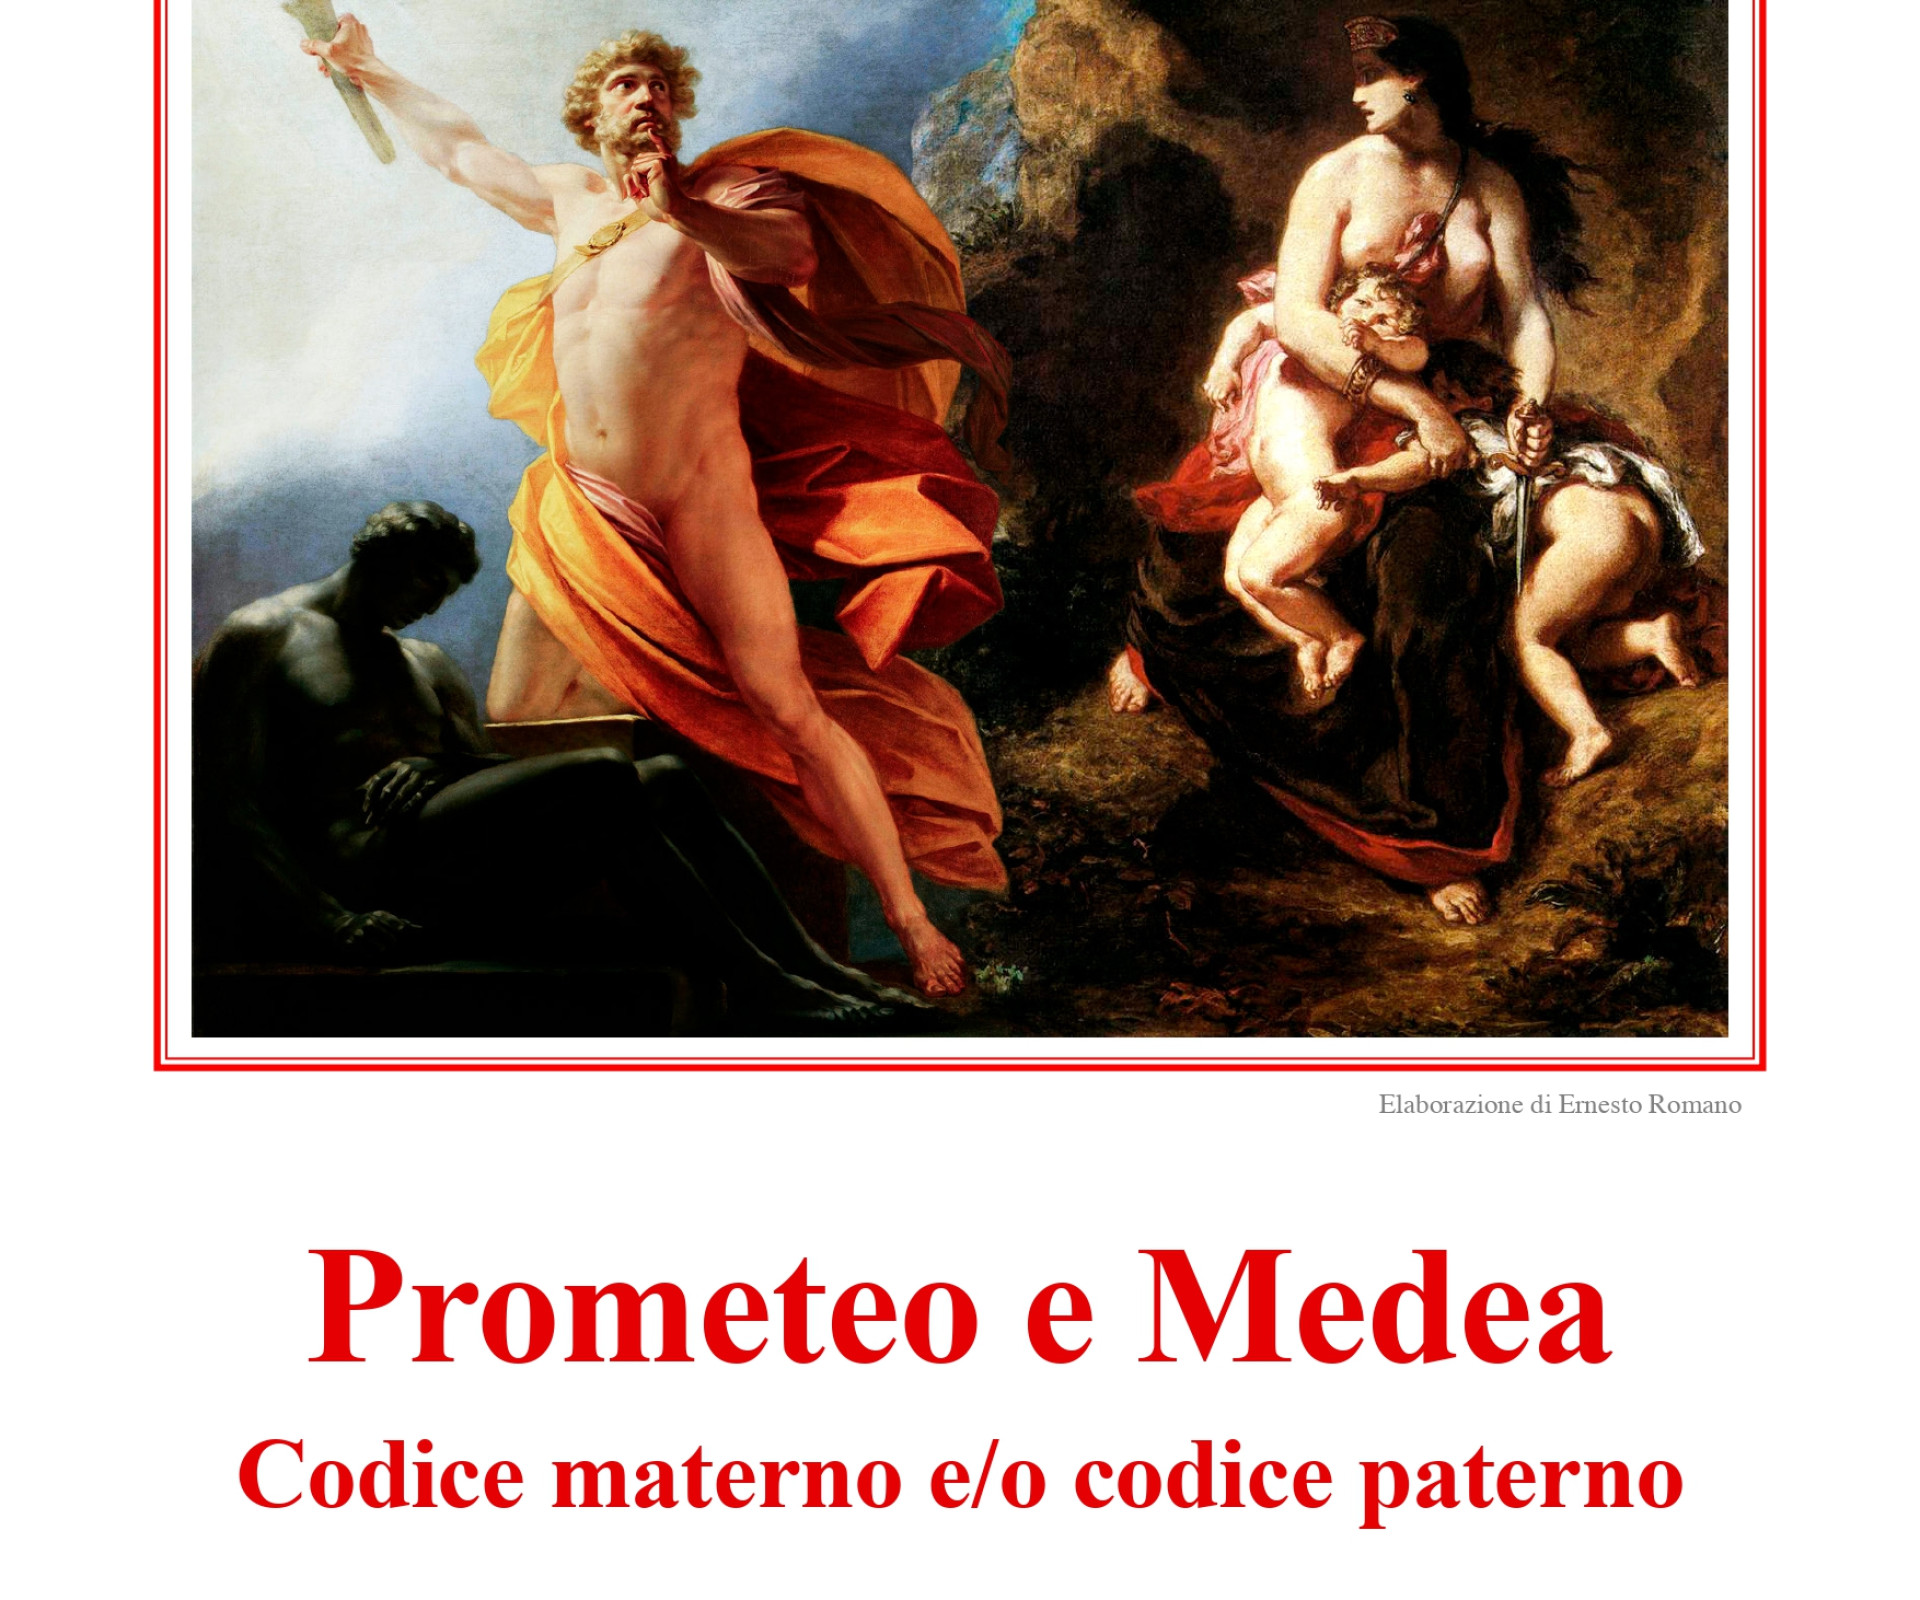 "PROMETEO E MEDEA. CODICE MATERNO E/O CODICE PATERNO".